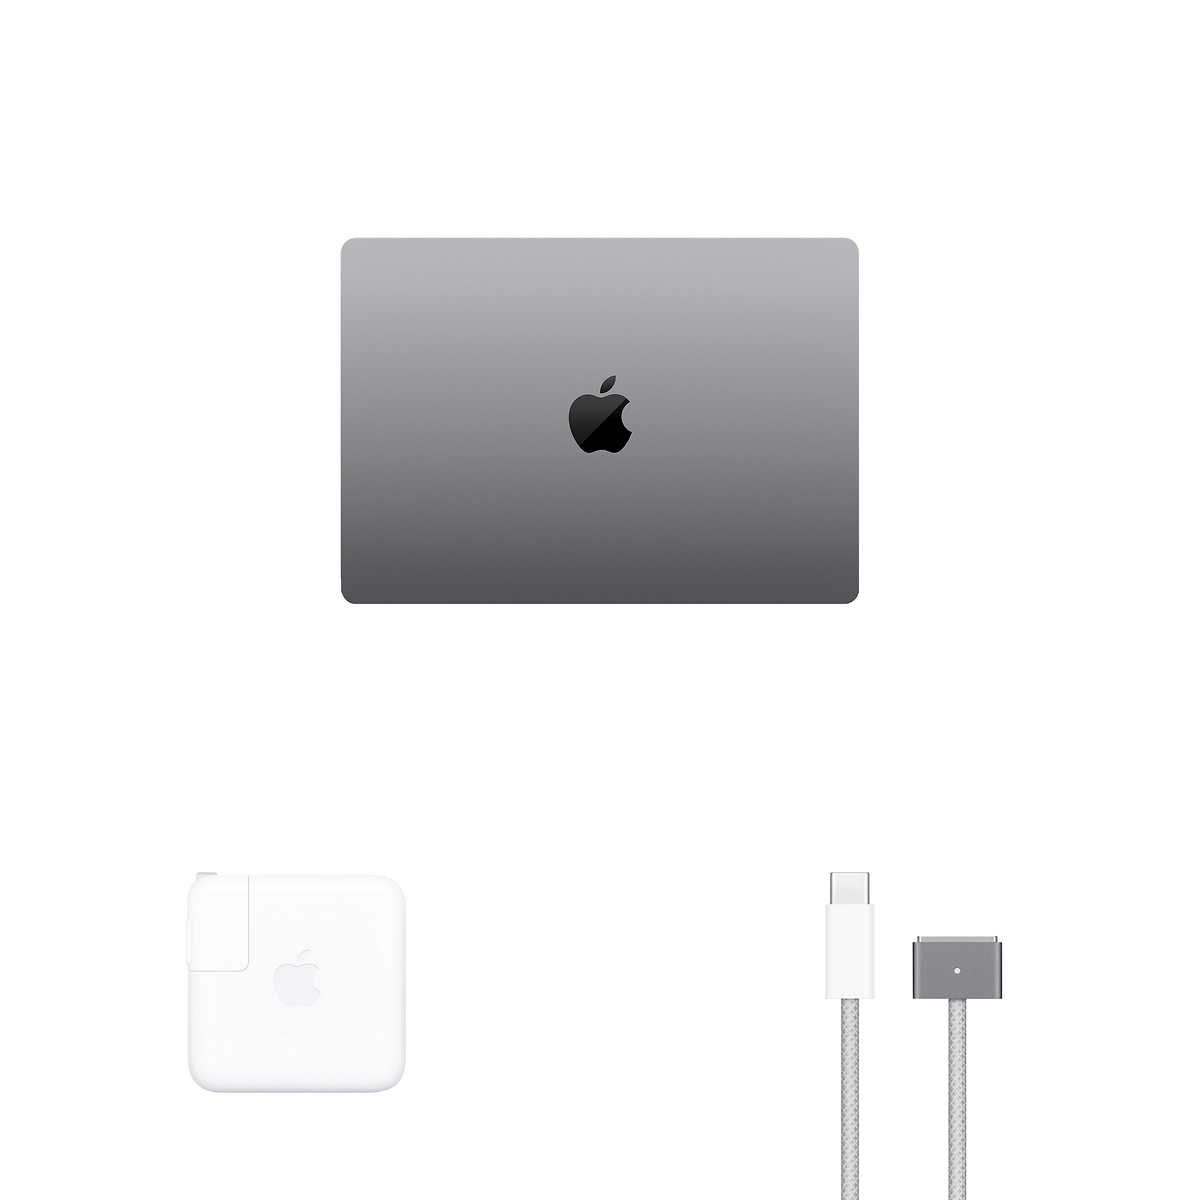 MacBook Pro laptop (14-inch) - Apple M3 chip, 8-core CPU, 10-core GPU, 8GB memory, 512GB SSD storage